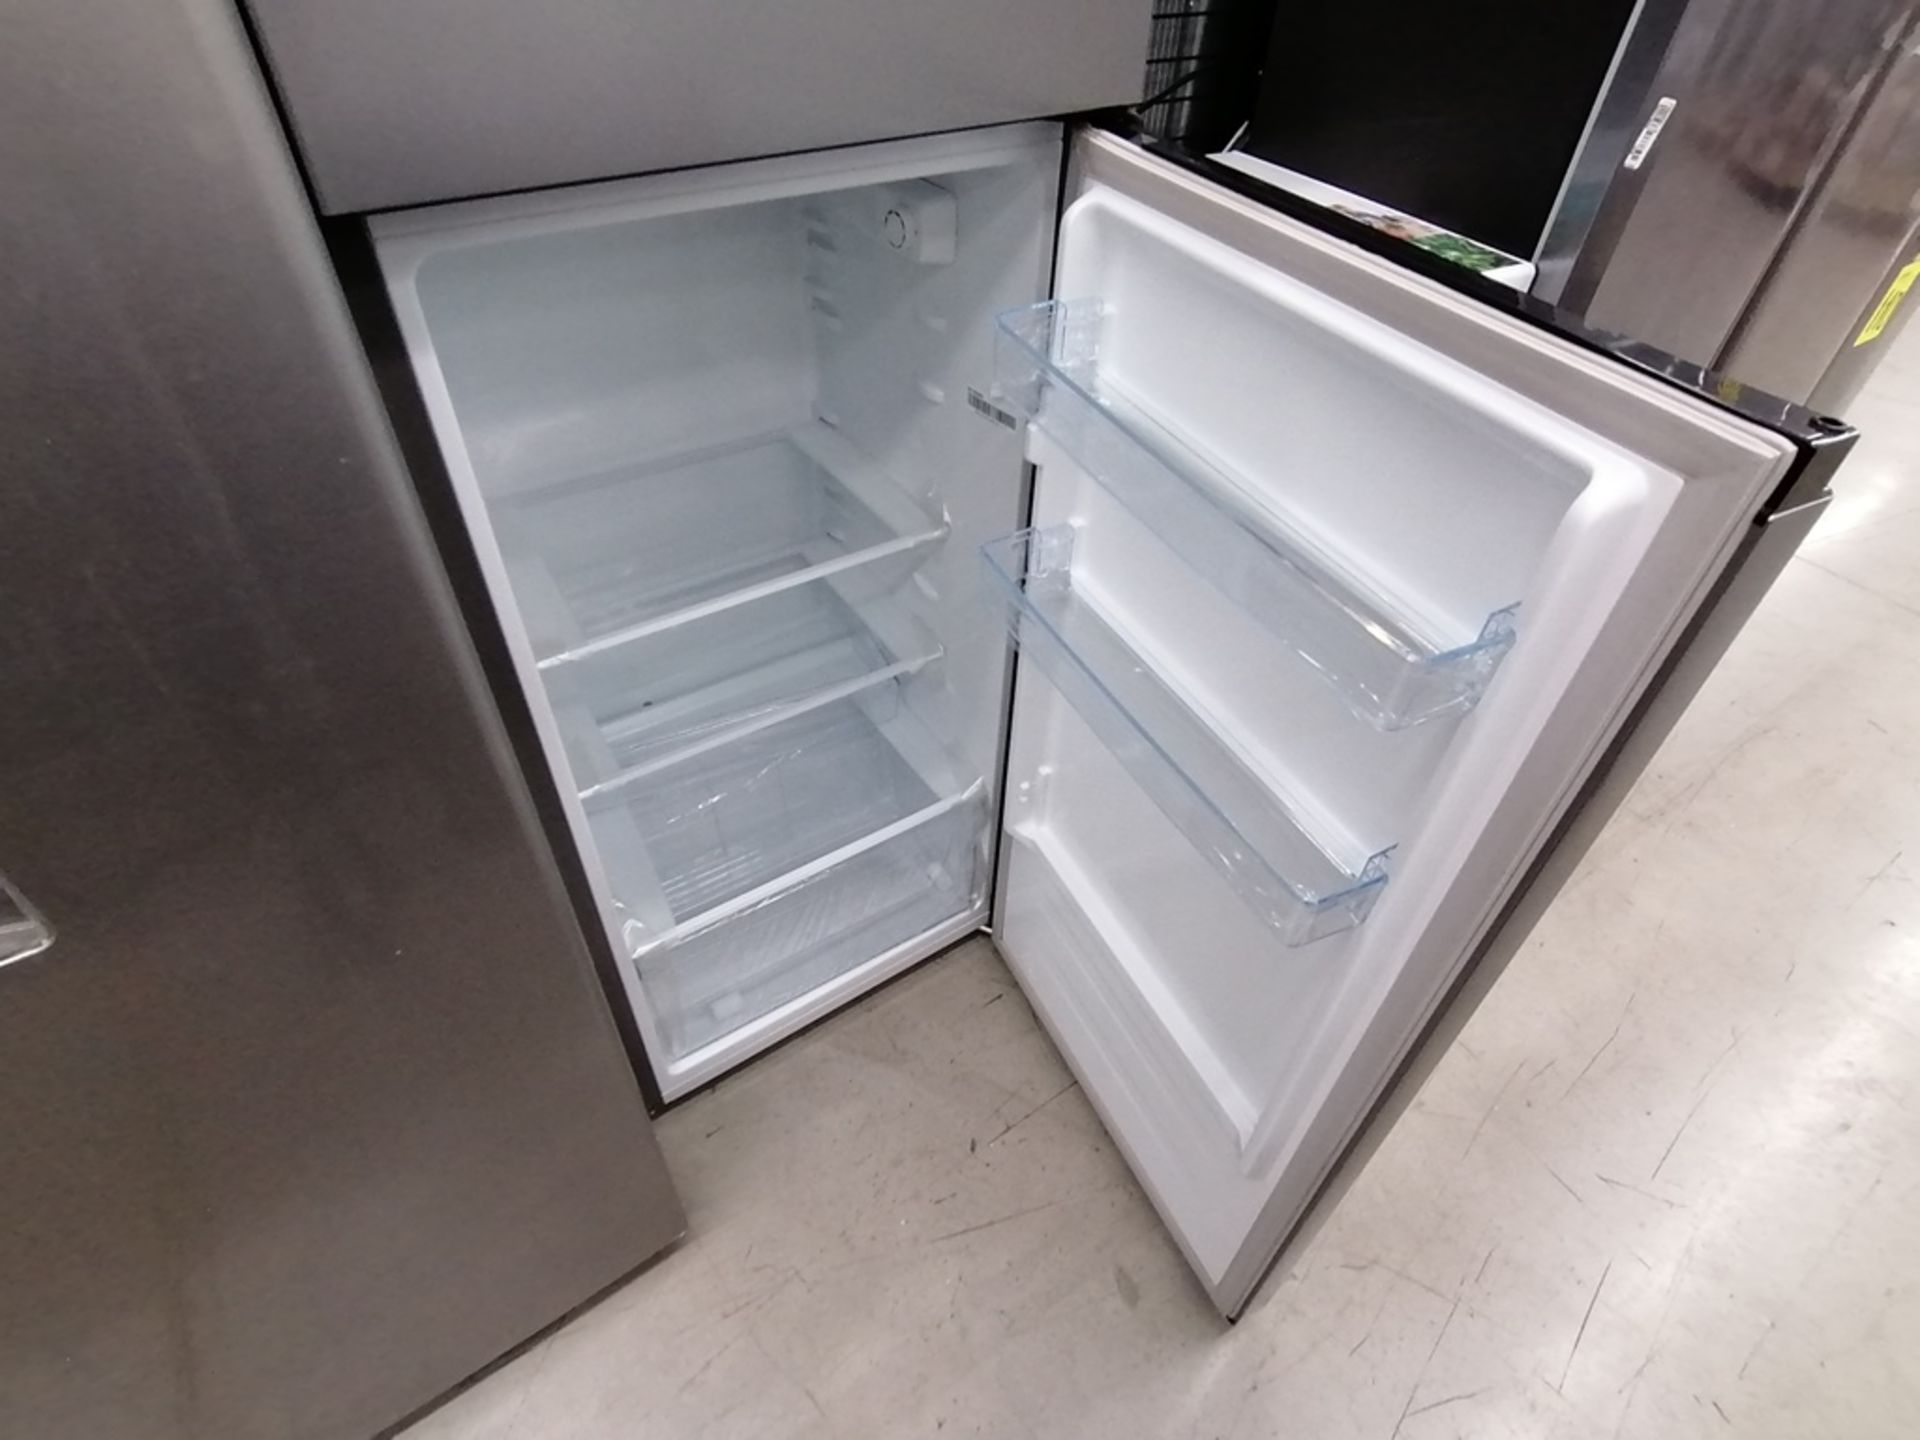 Lote de 2 refrigeradores incluye: 1 Refrigerador, Marca Winia, Modelo DFR40510GNDG, Serie MR21YN107 - Image 14 of 15